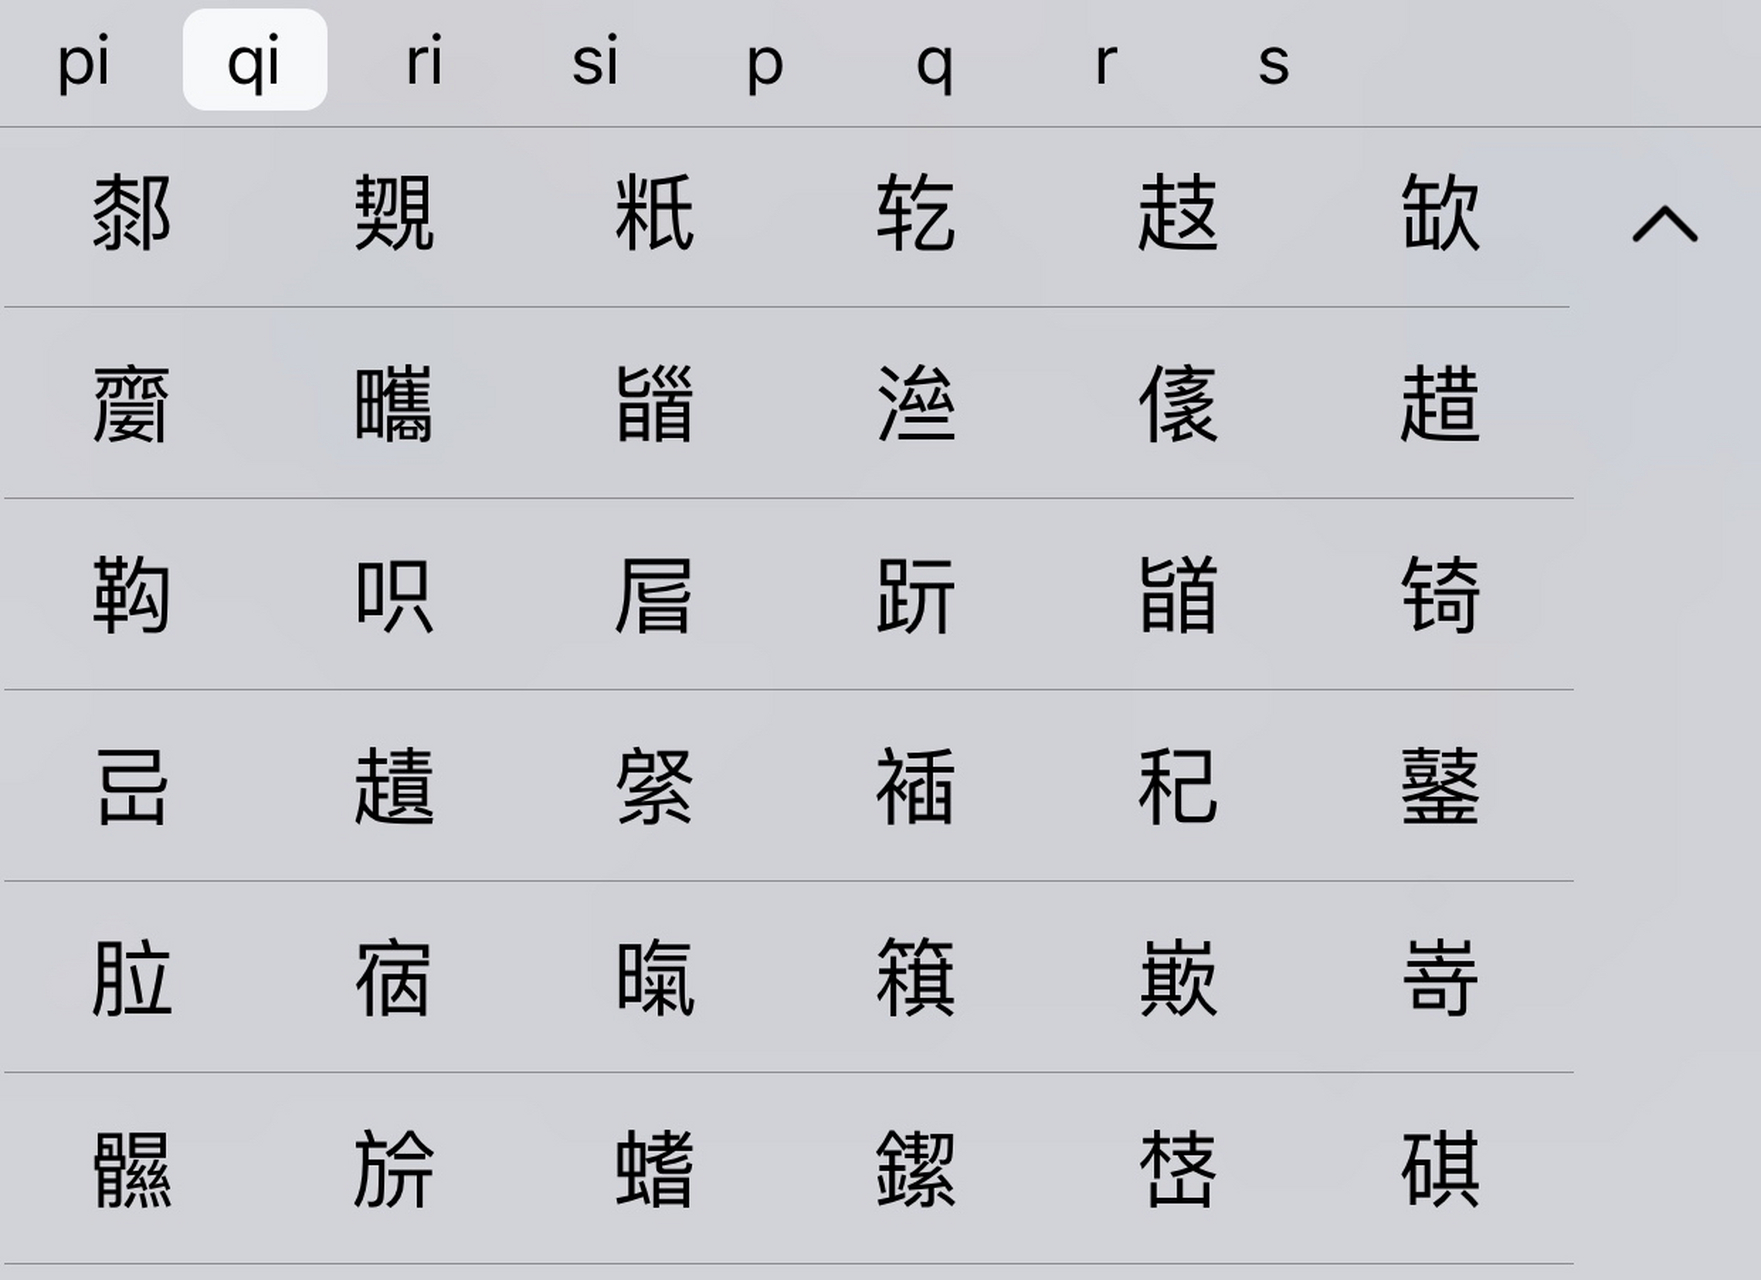 一个qi的拼音就有这么多汉字,我看了一下,平常用到的可能也就二三十